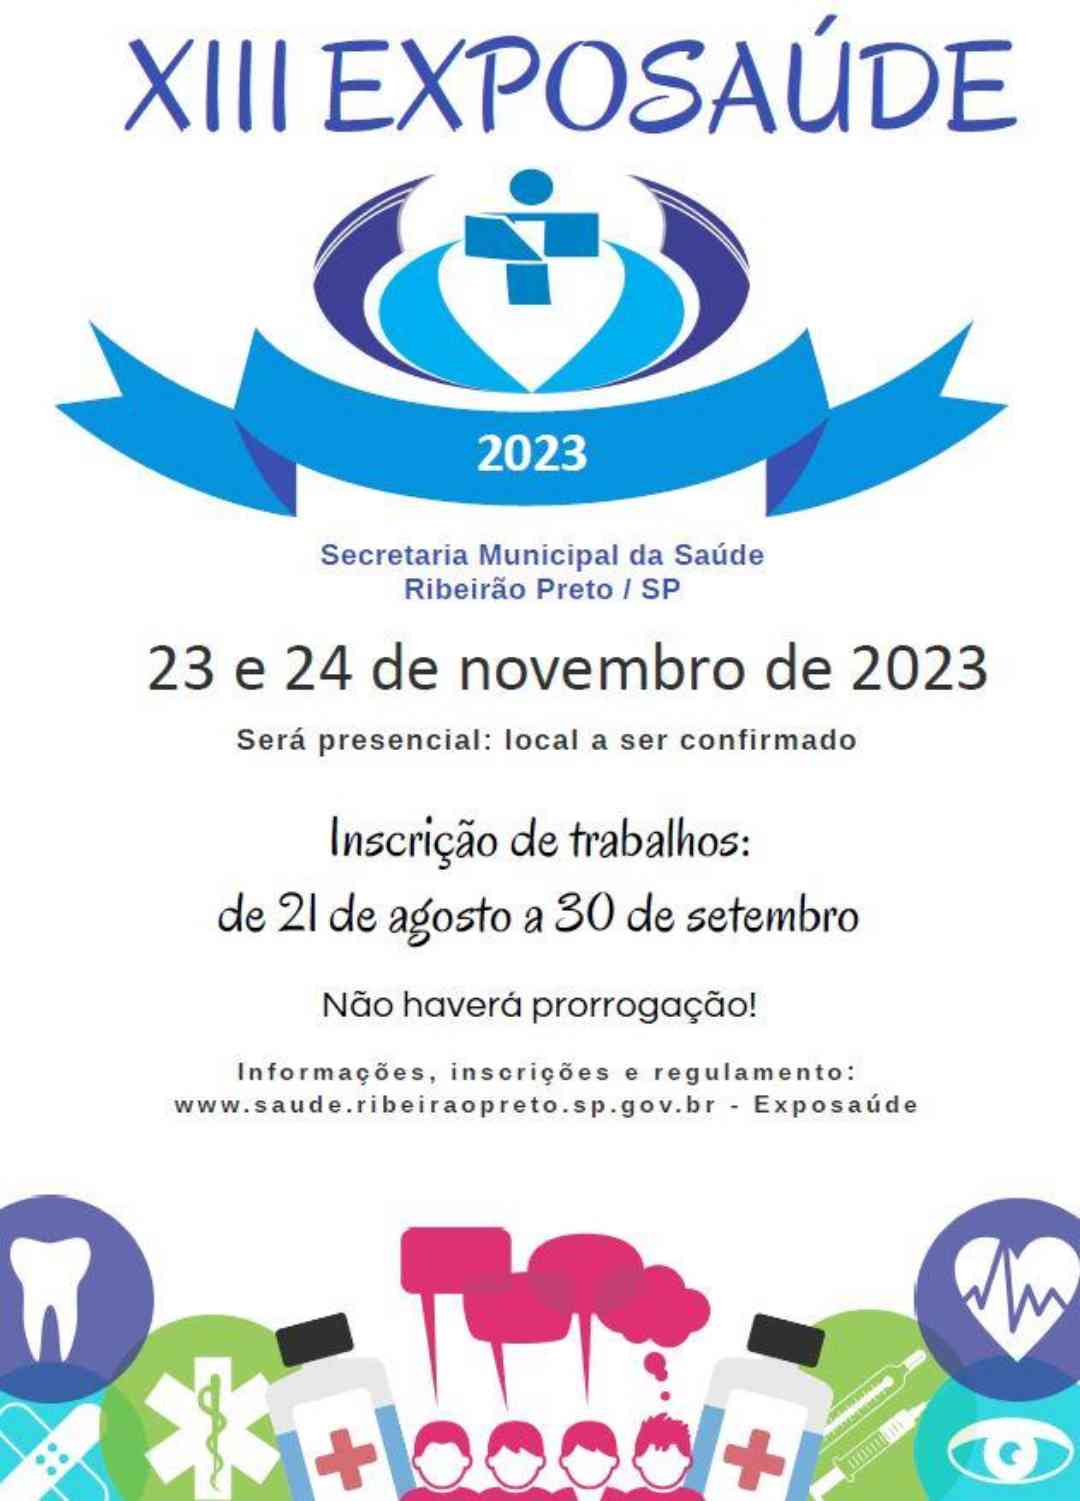 Evento que tem objetivo de identificar experiências bem-sucedidas na saúde pública acontecerá nos dias 23 e 24 de novembro